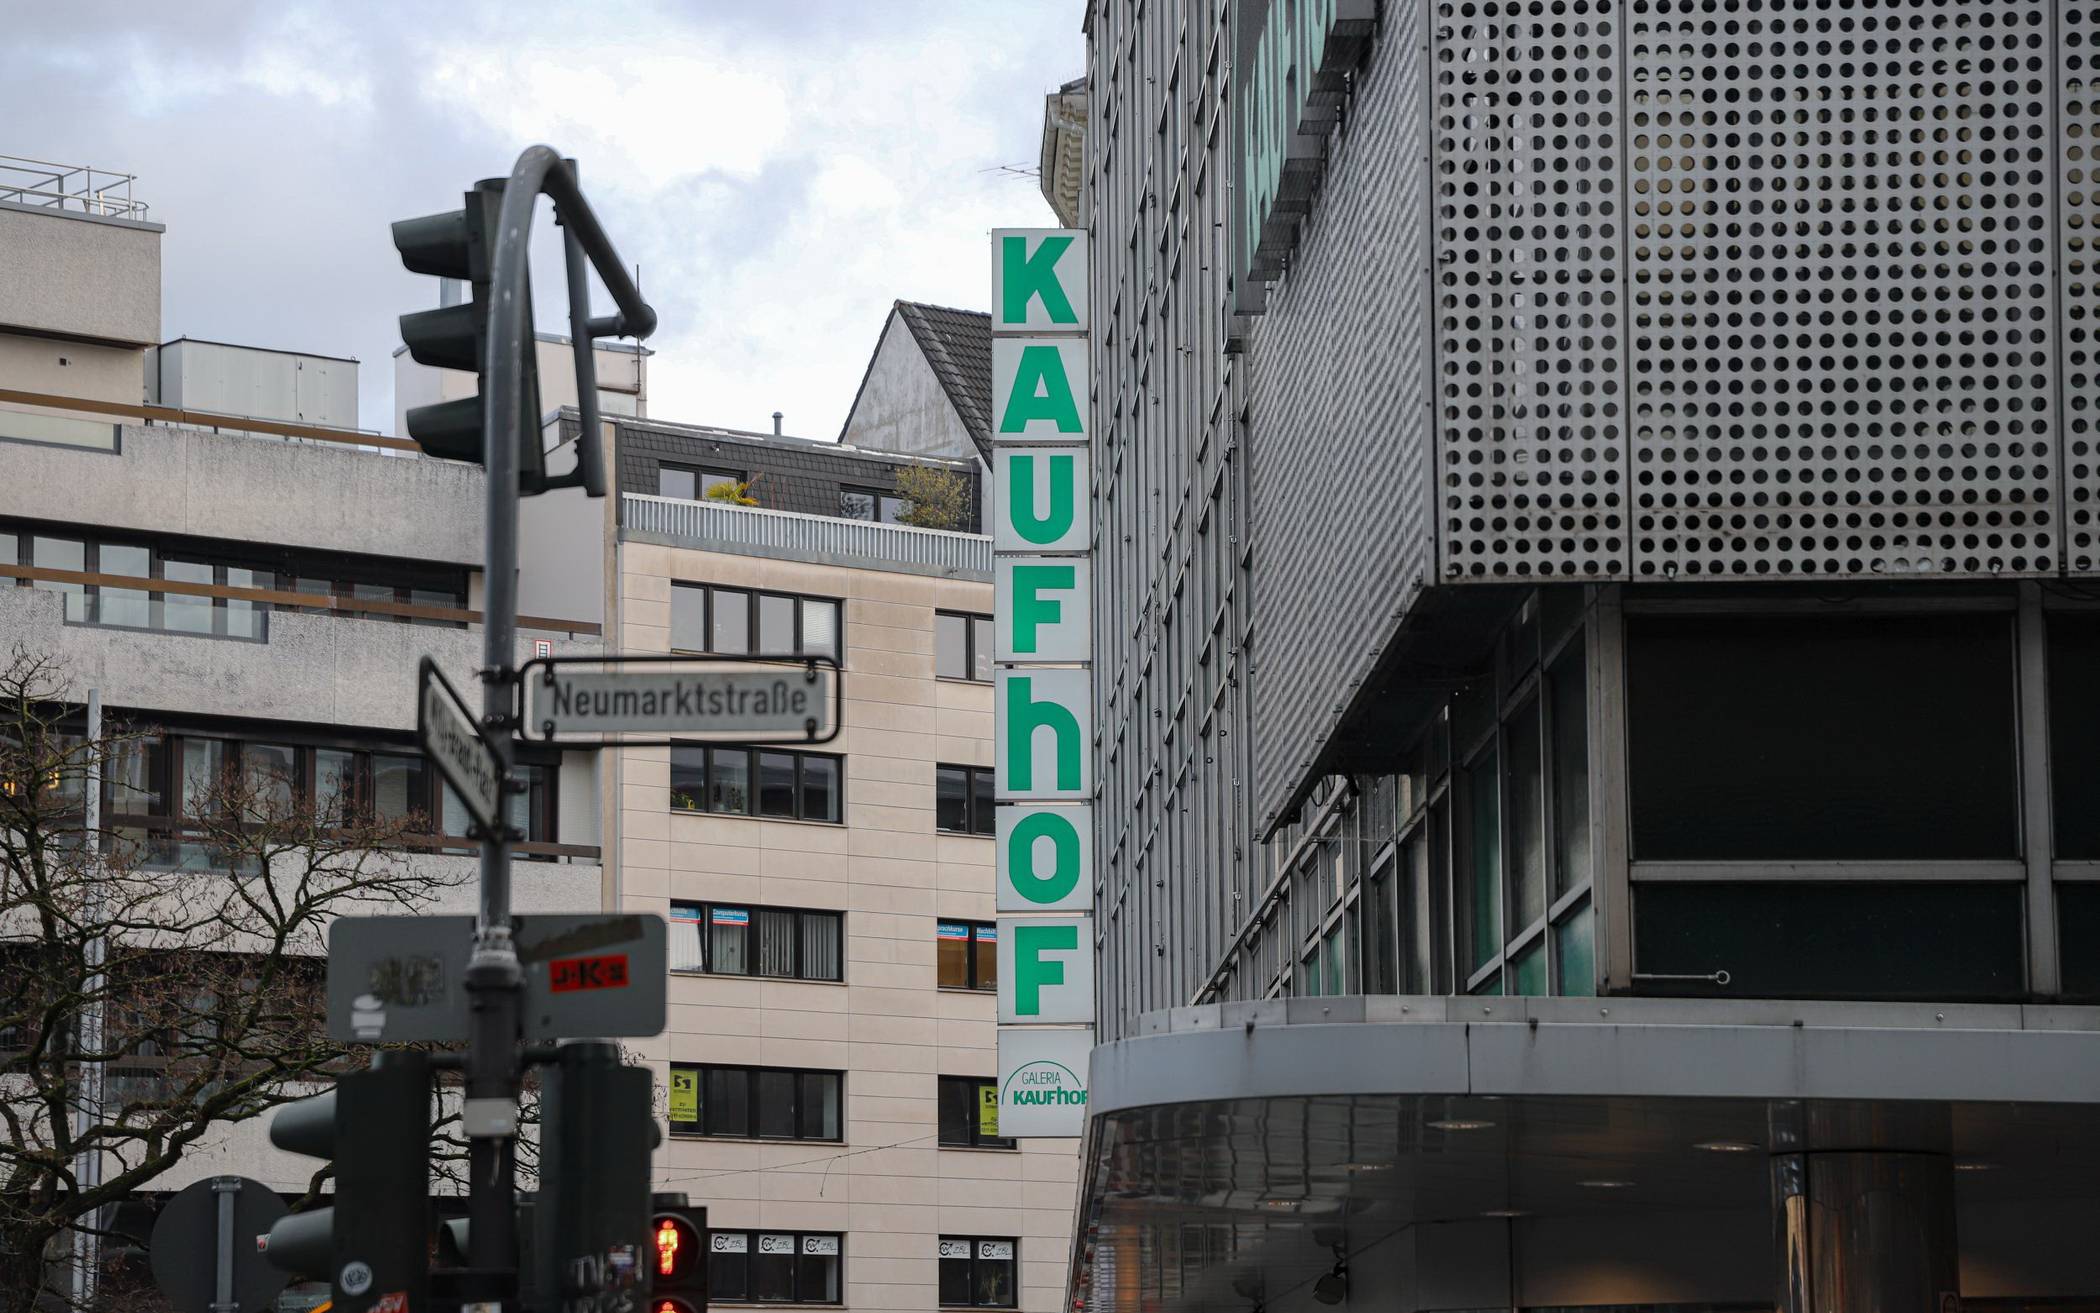  Der Kaufhof an der Neumarktstraße. 